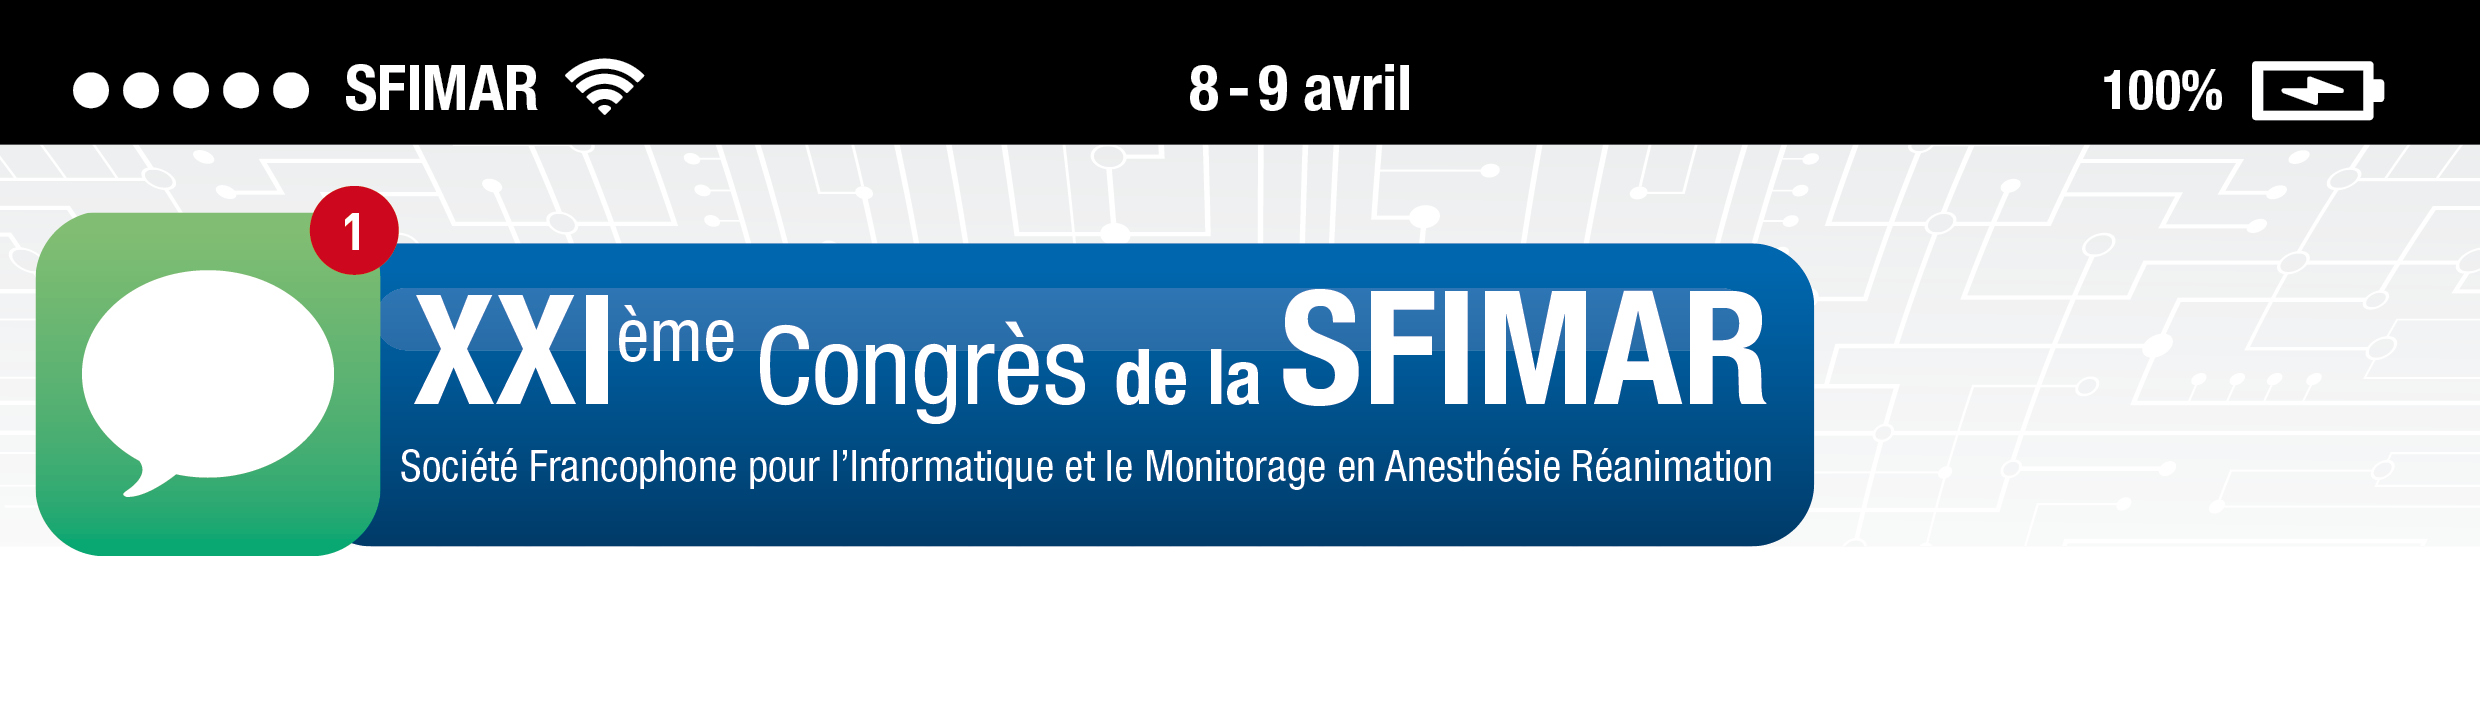 SFIMAR - 8 & 9 avril 2016 Grenoble